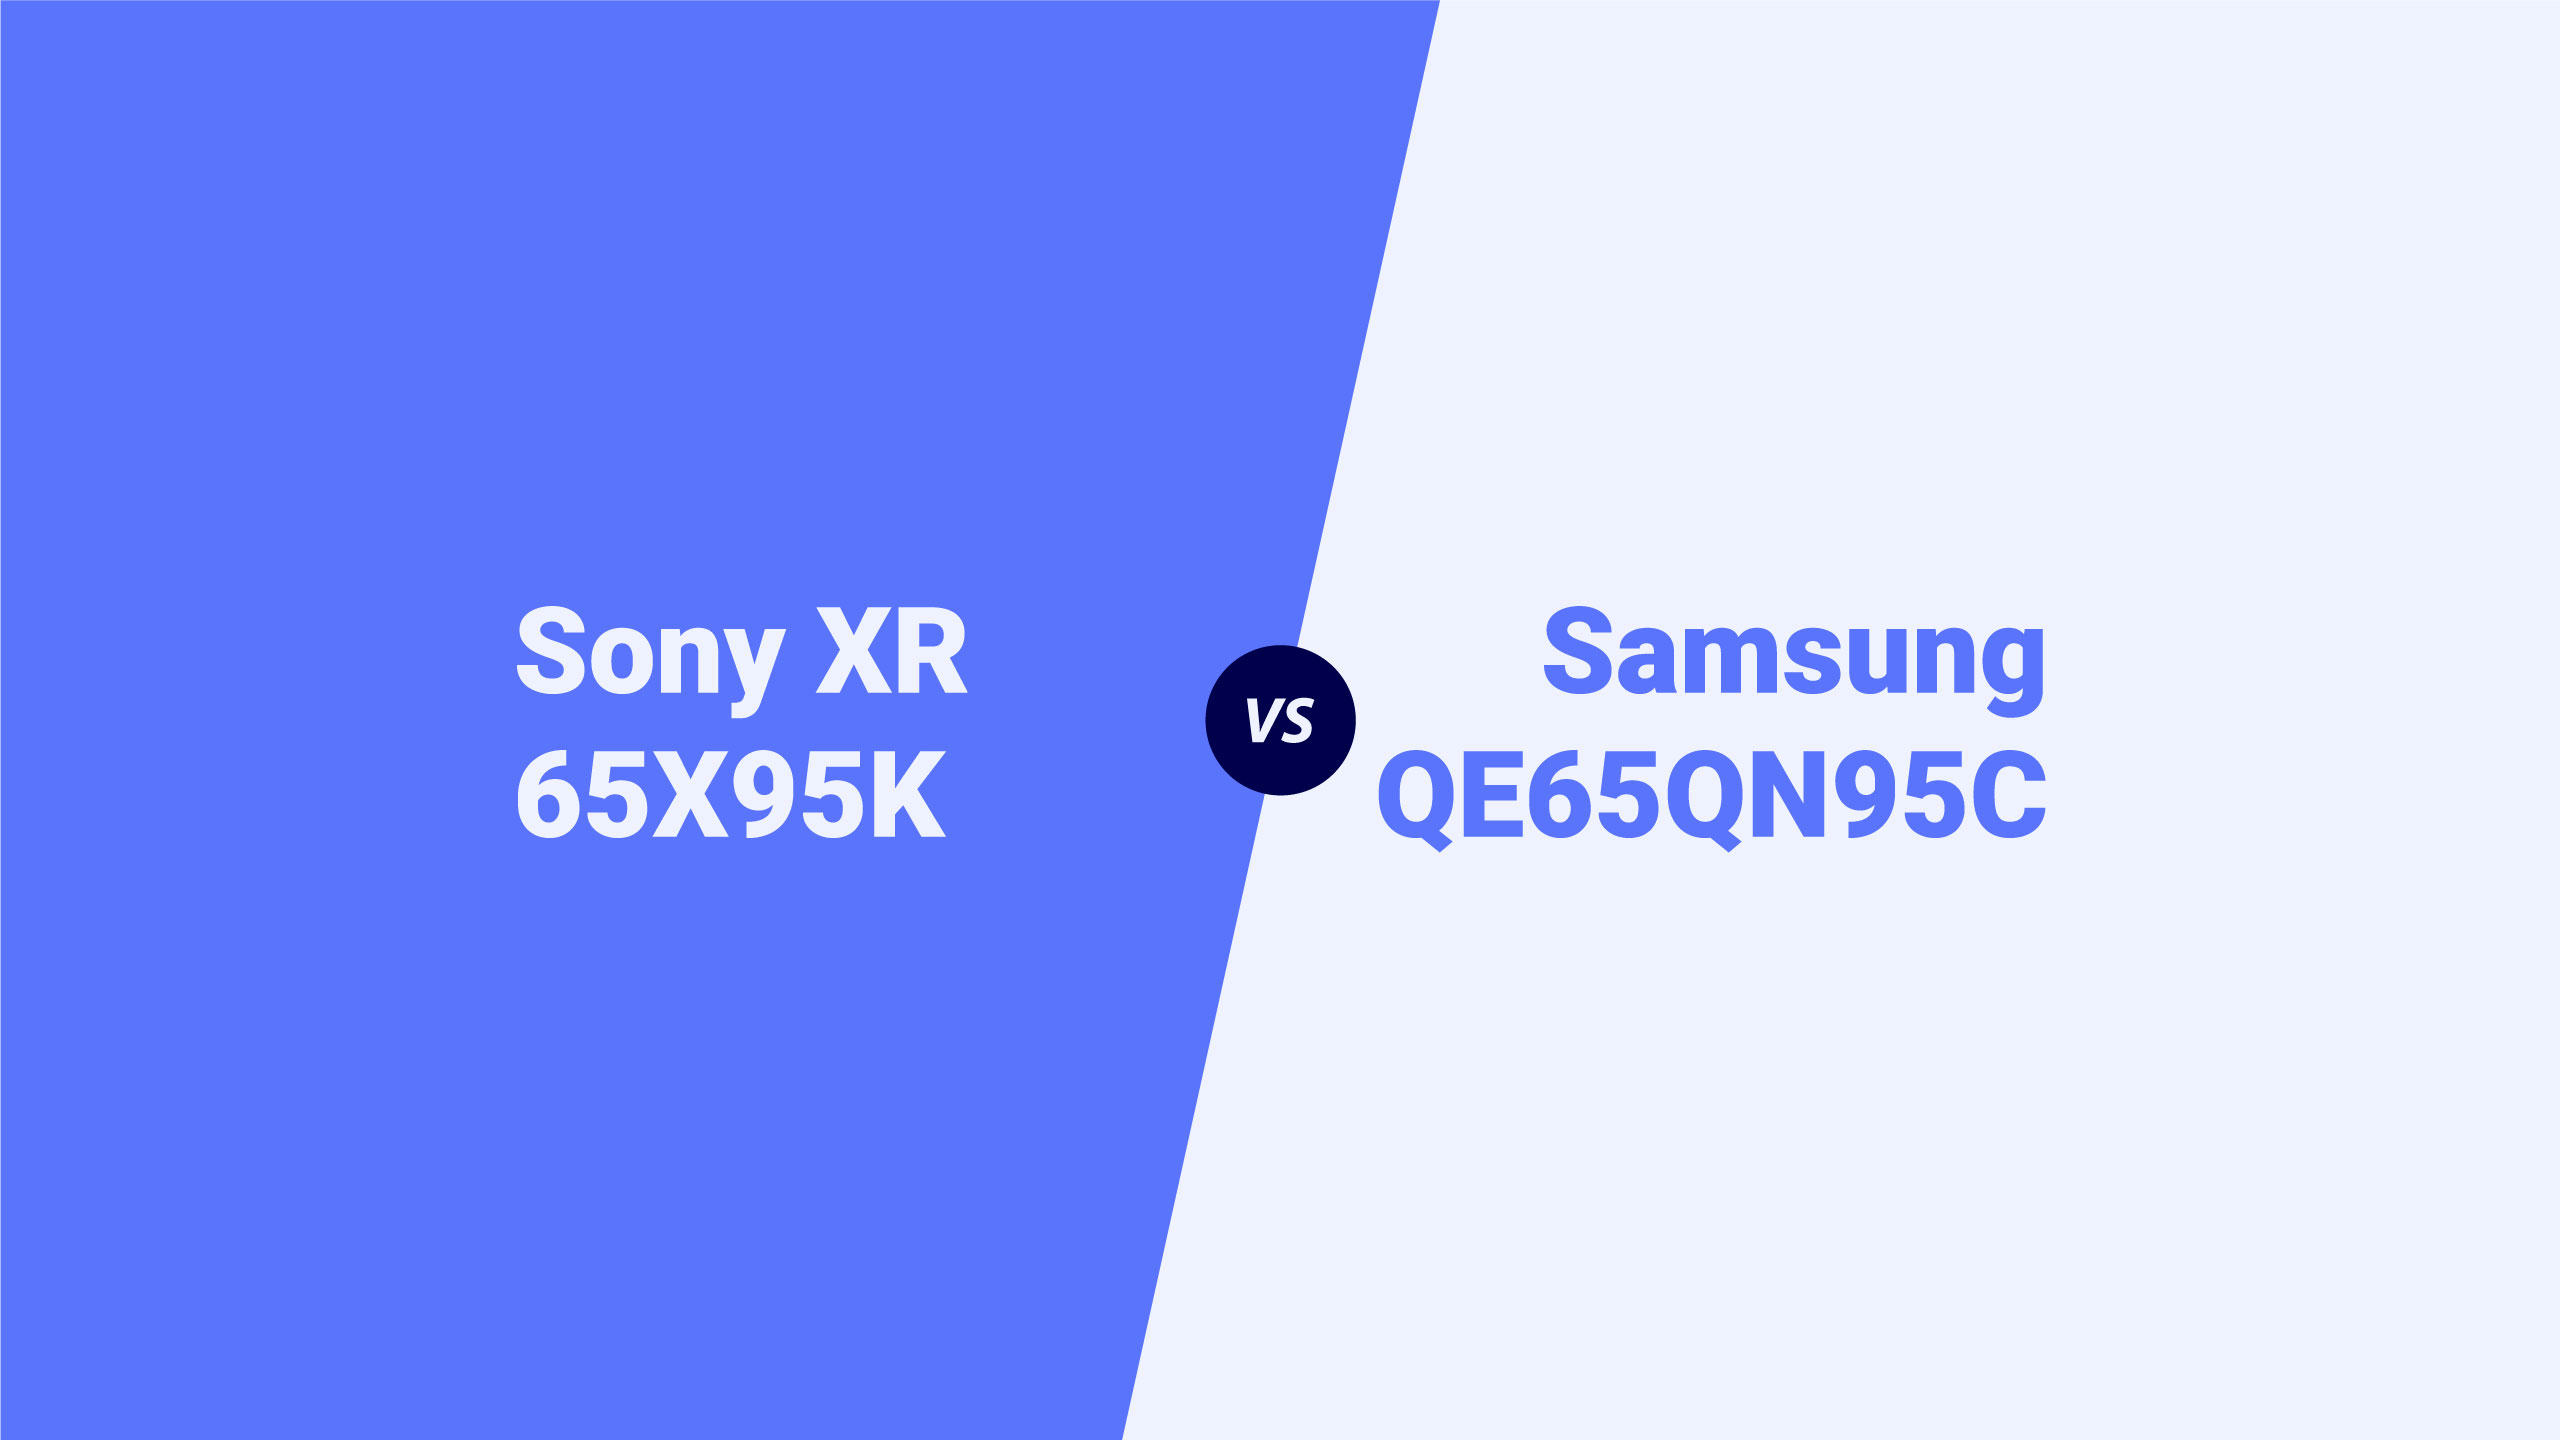 Sony XR 65X95K vs Samsung QE65QN95C